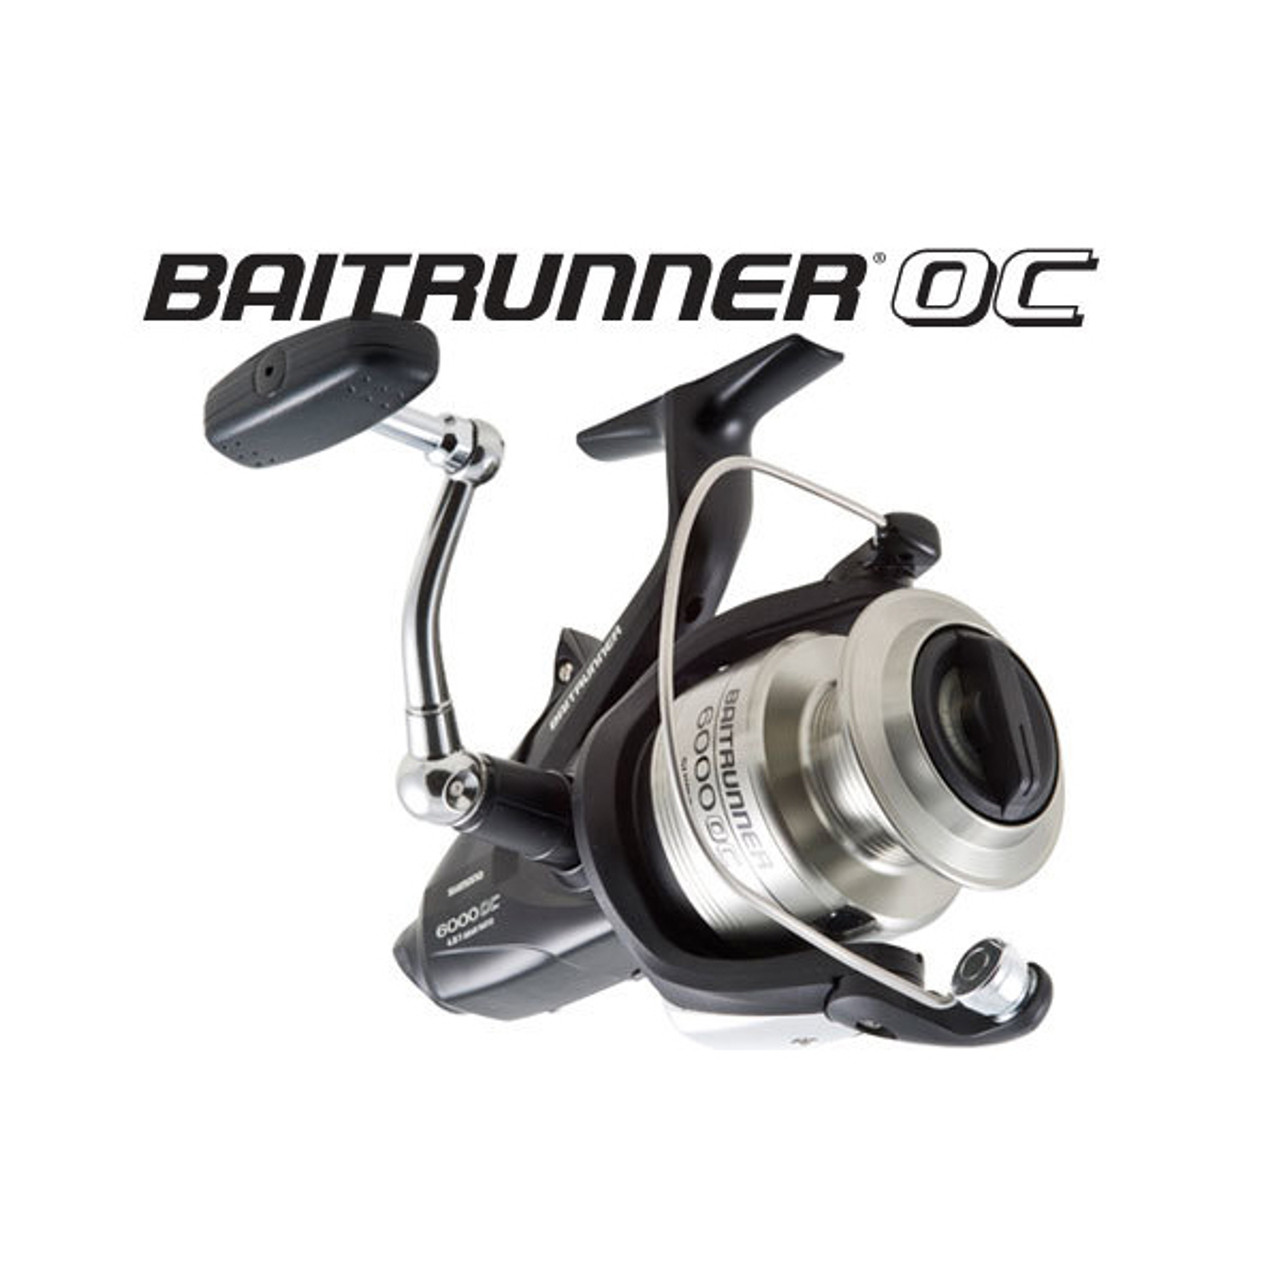 Shimano Baitrunner 8000OC Saltwater Spinning Reel BTR8000OC - NEW